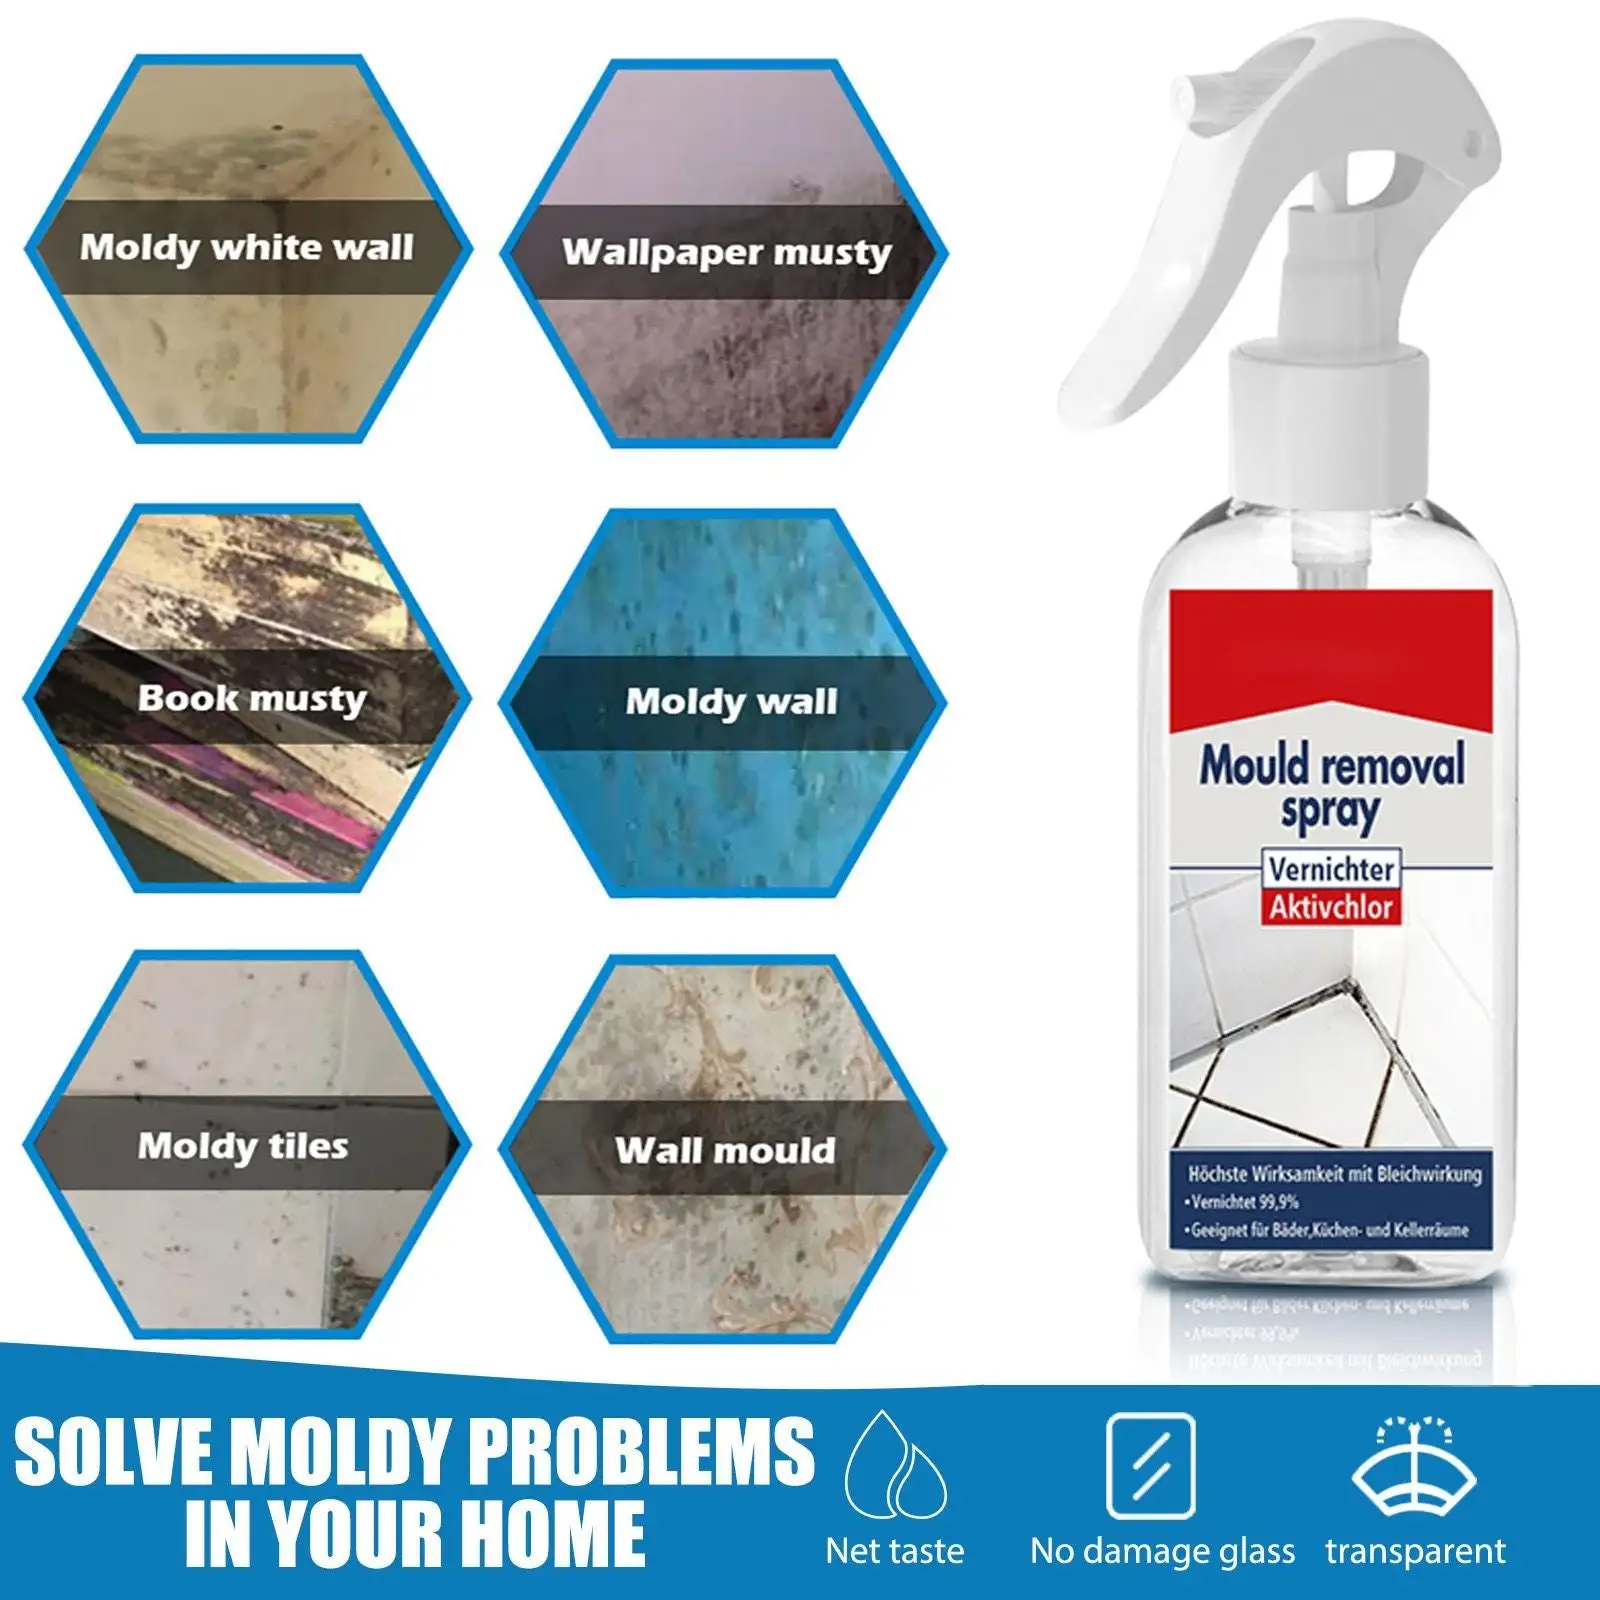 Nettoyant pour moules 750ml - Spray anti-moisissure pour murs